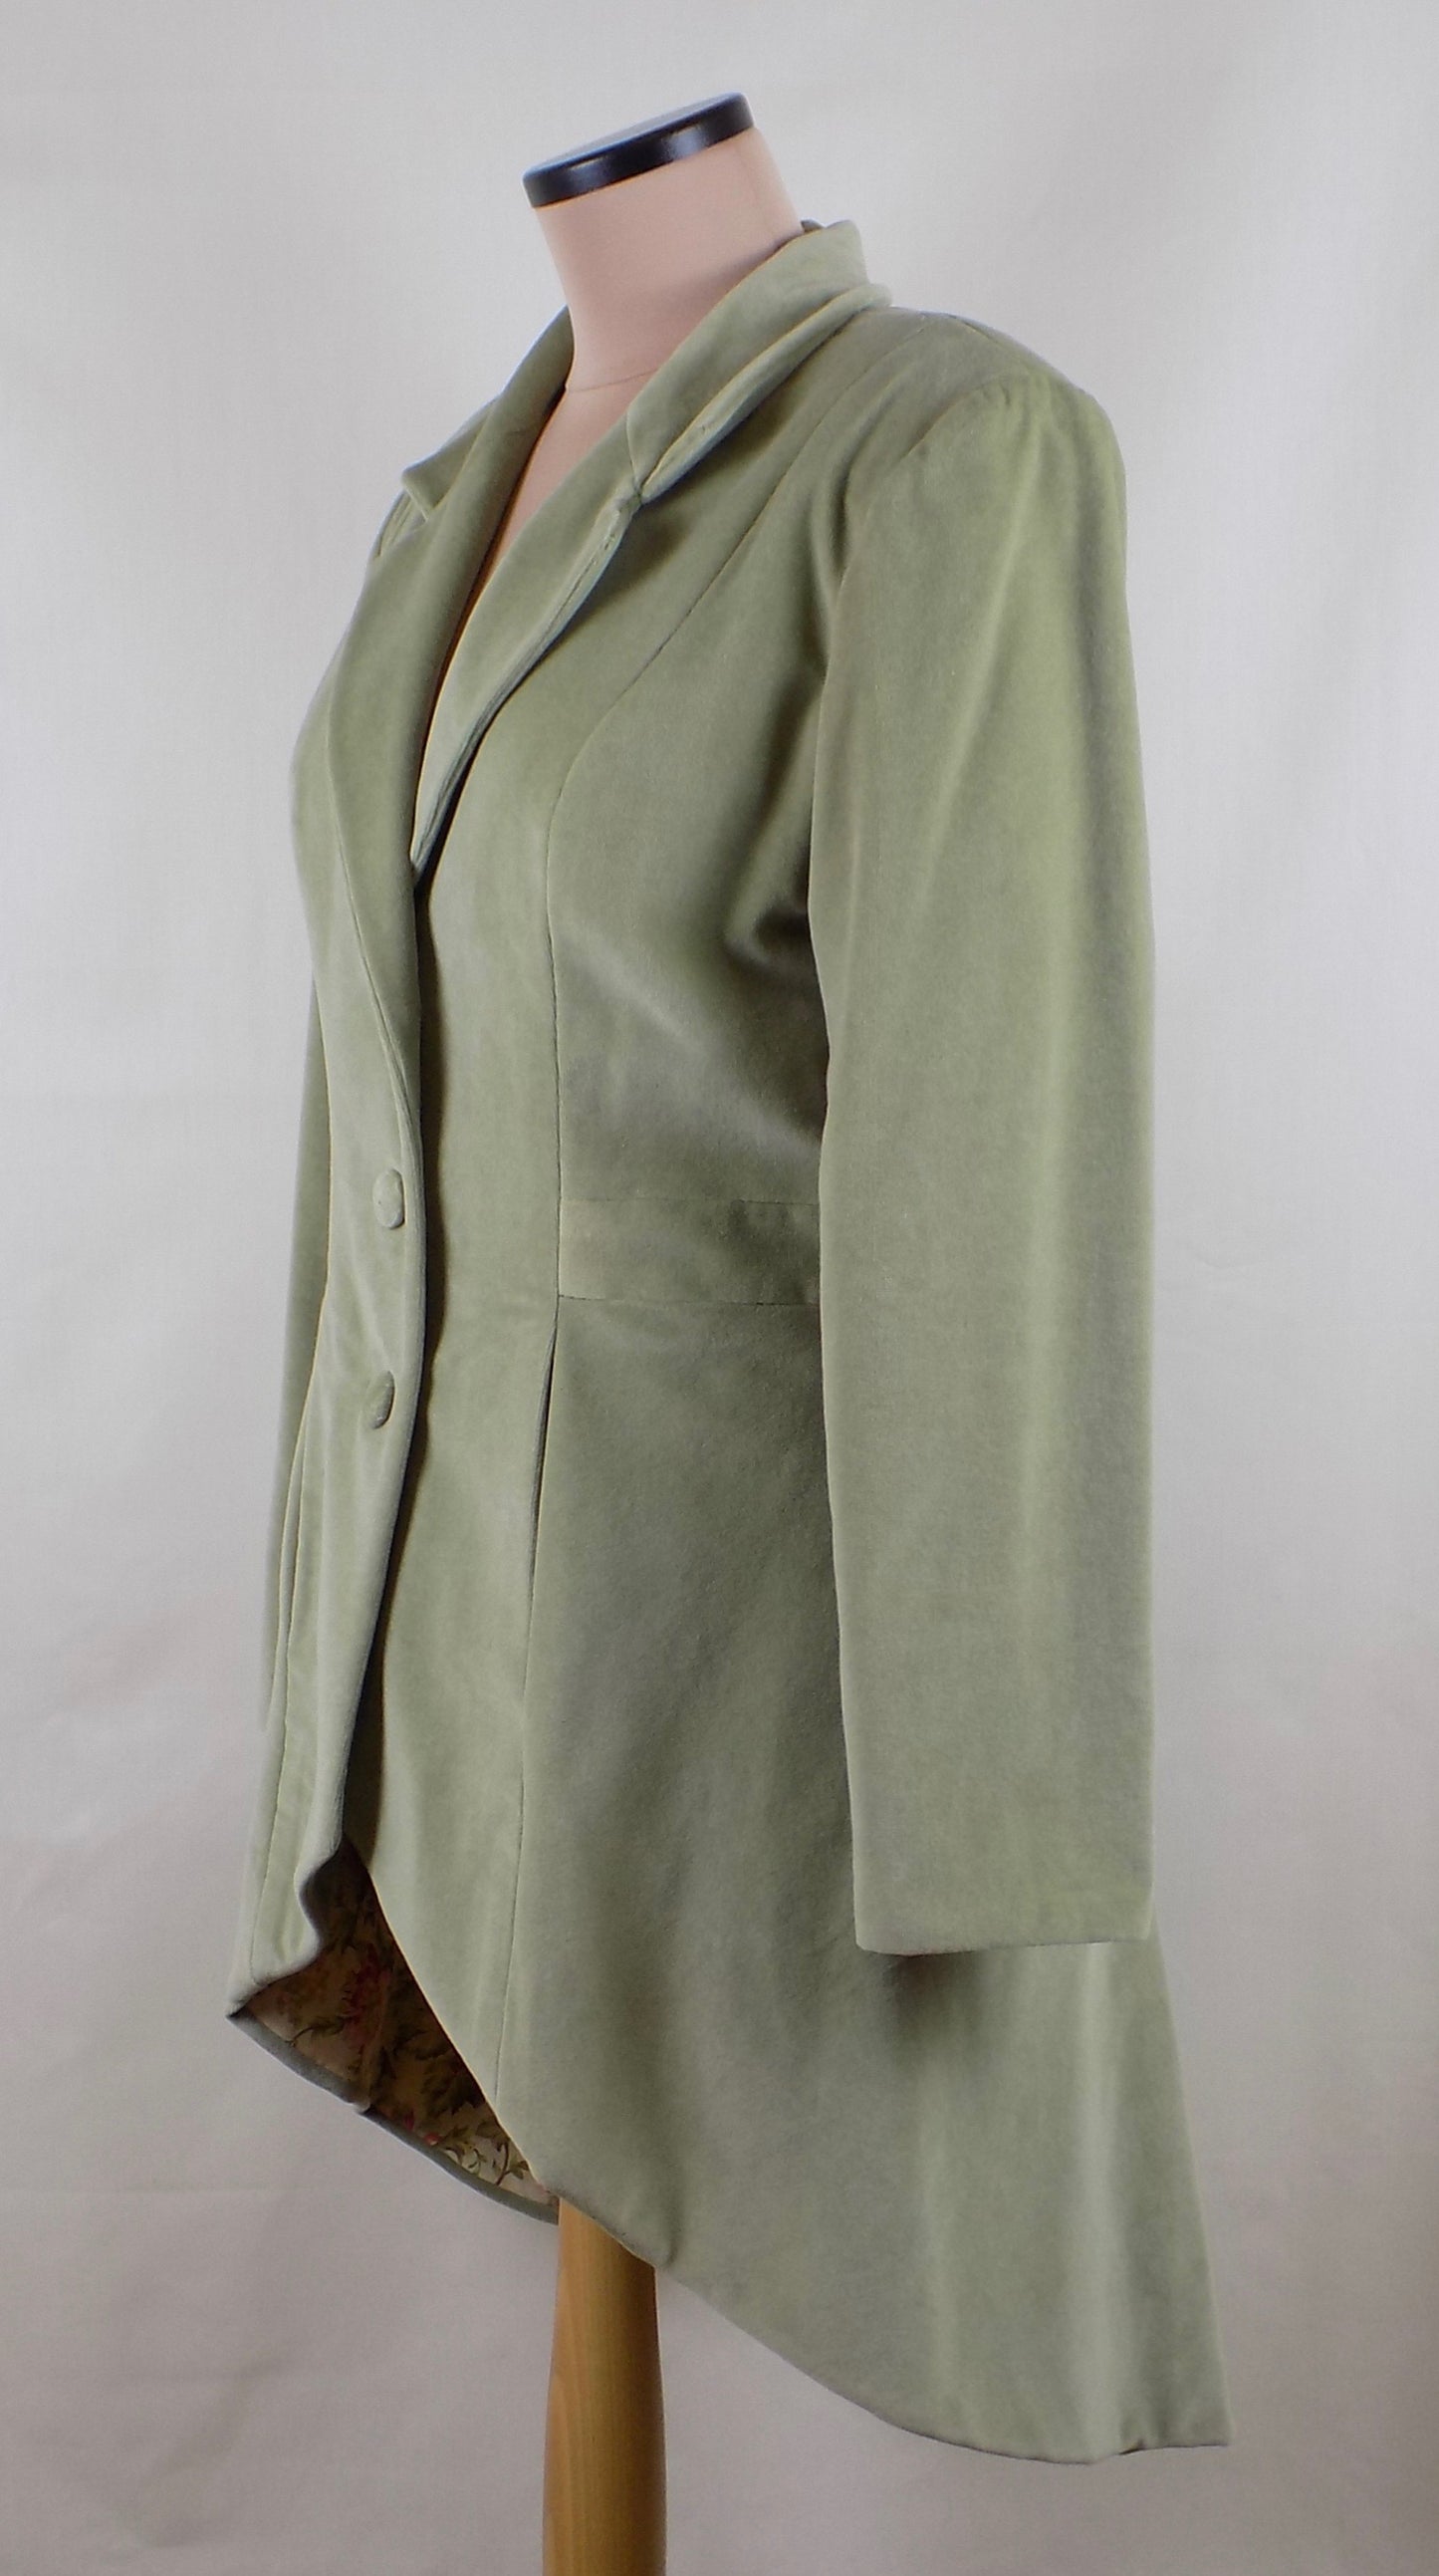 Tailored Velvet Jacket, Size 40